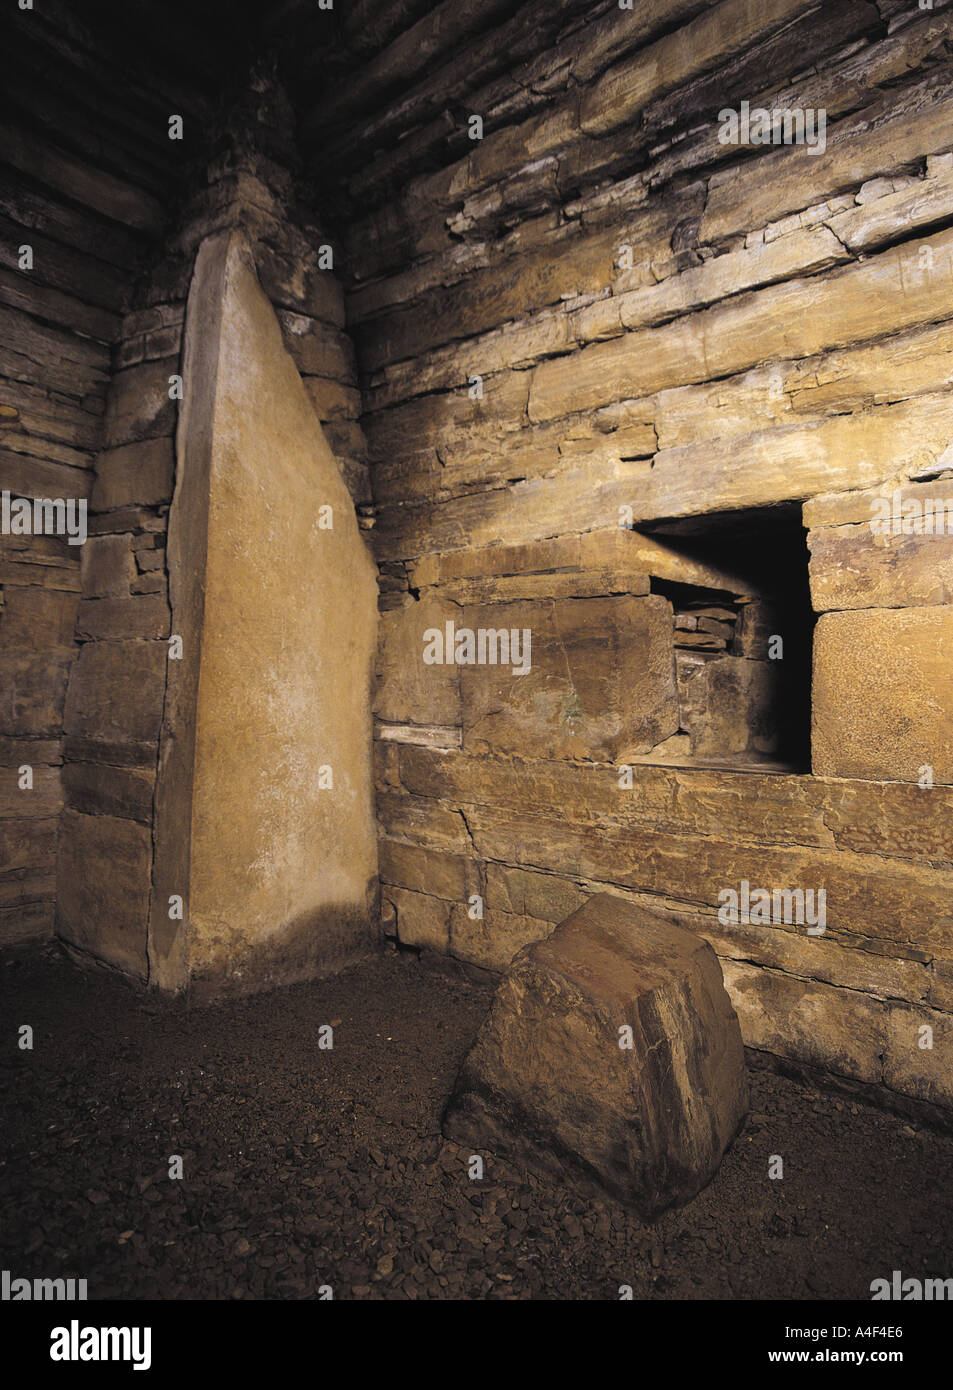 Dh chambre funéraire de MAESHOWE sépulture néolithique des Orcades pierre bloc intérieur chambre ecosse cairn chambré mound Banque D'Images